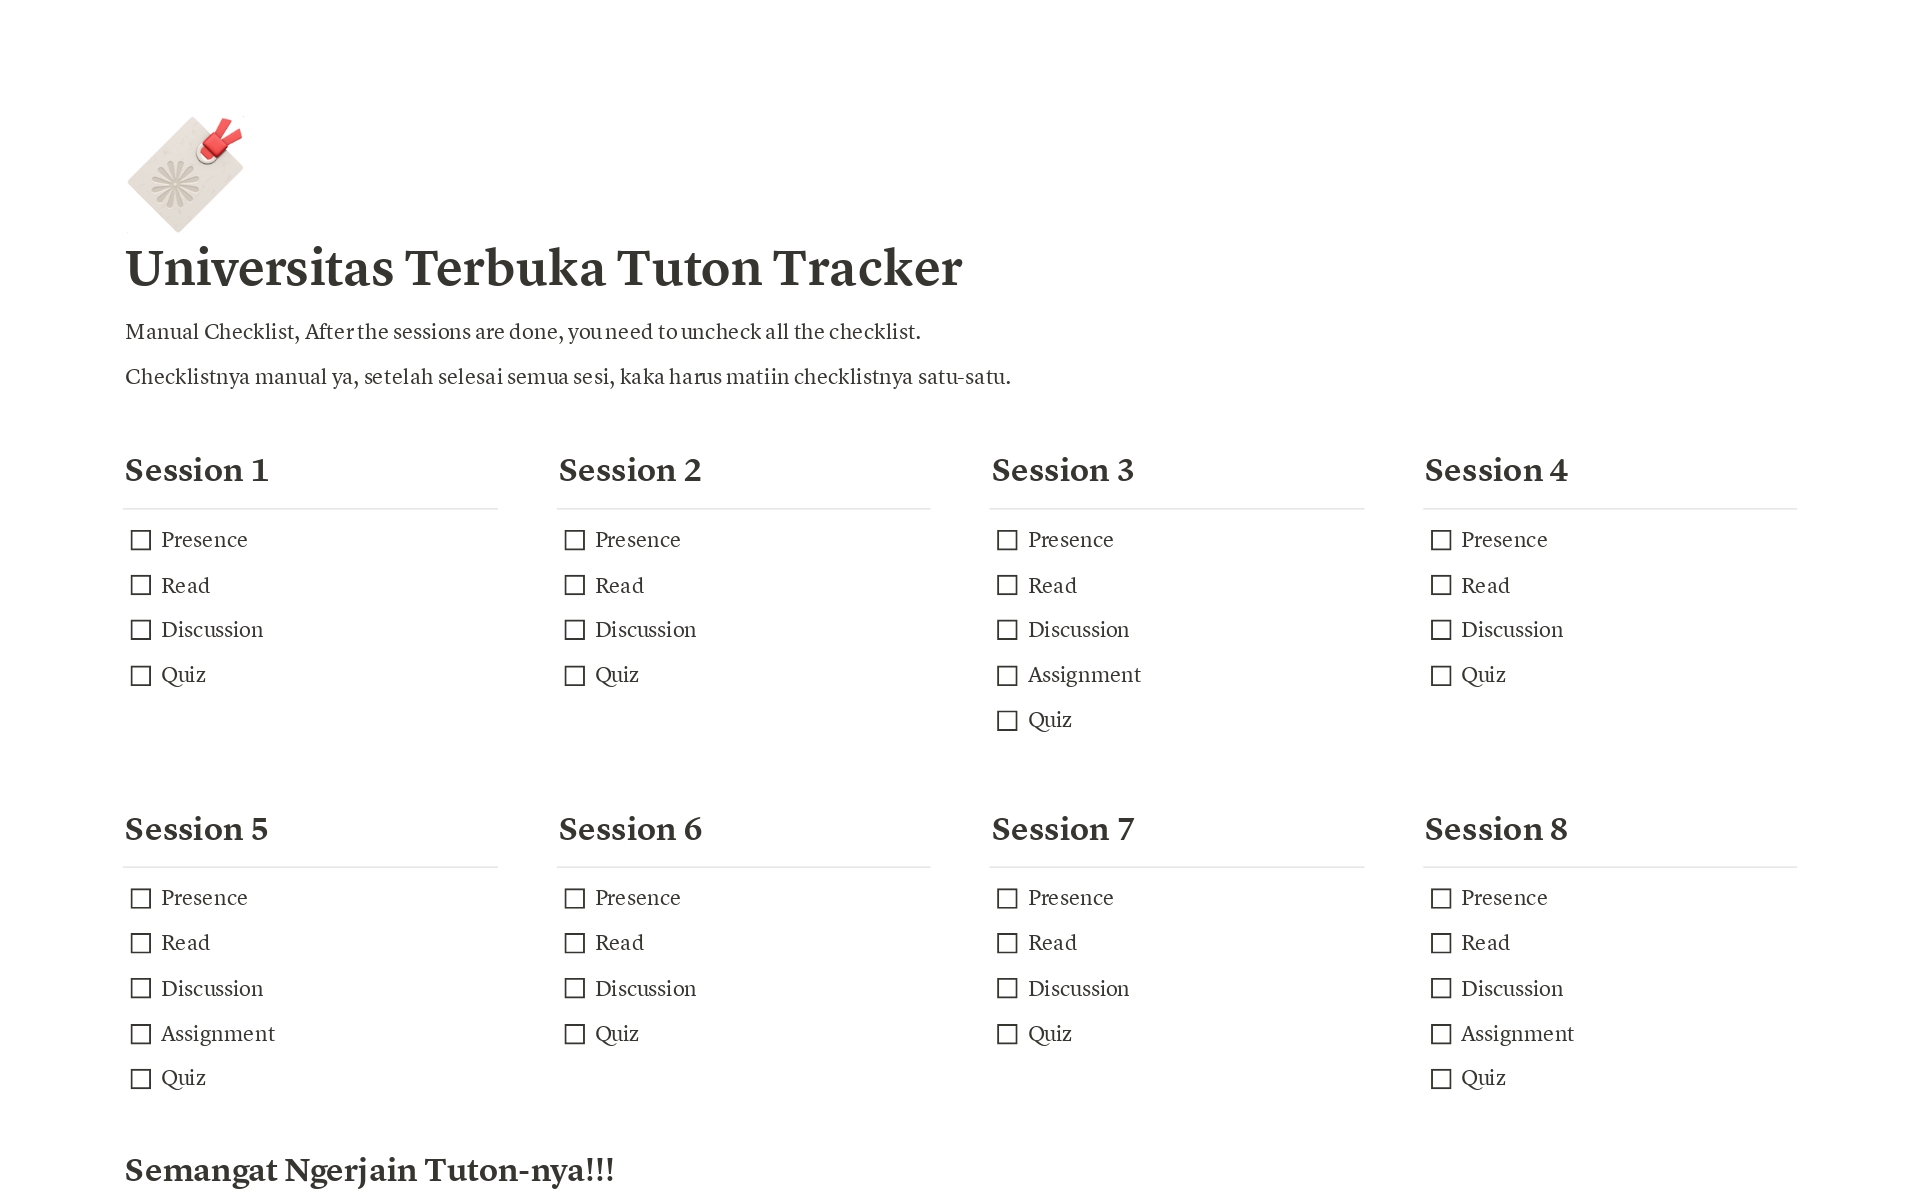 En forhåndsvisning av mal for Tuton Checker for Universitas Terbuka